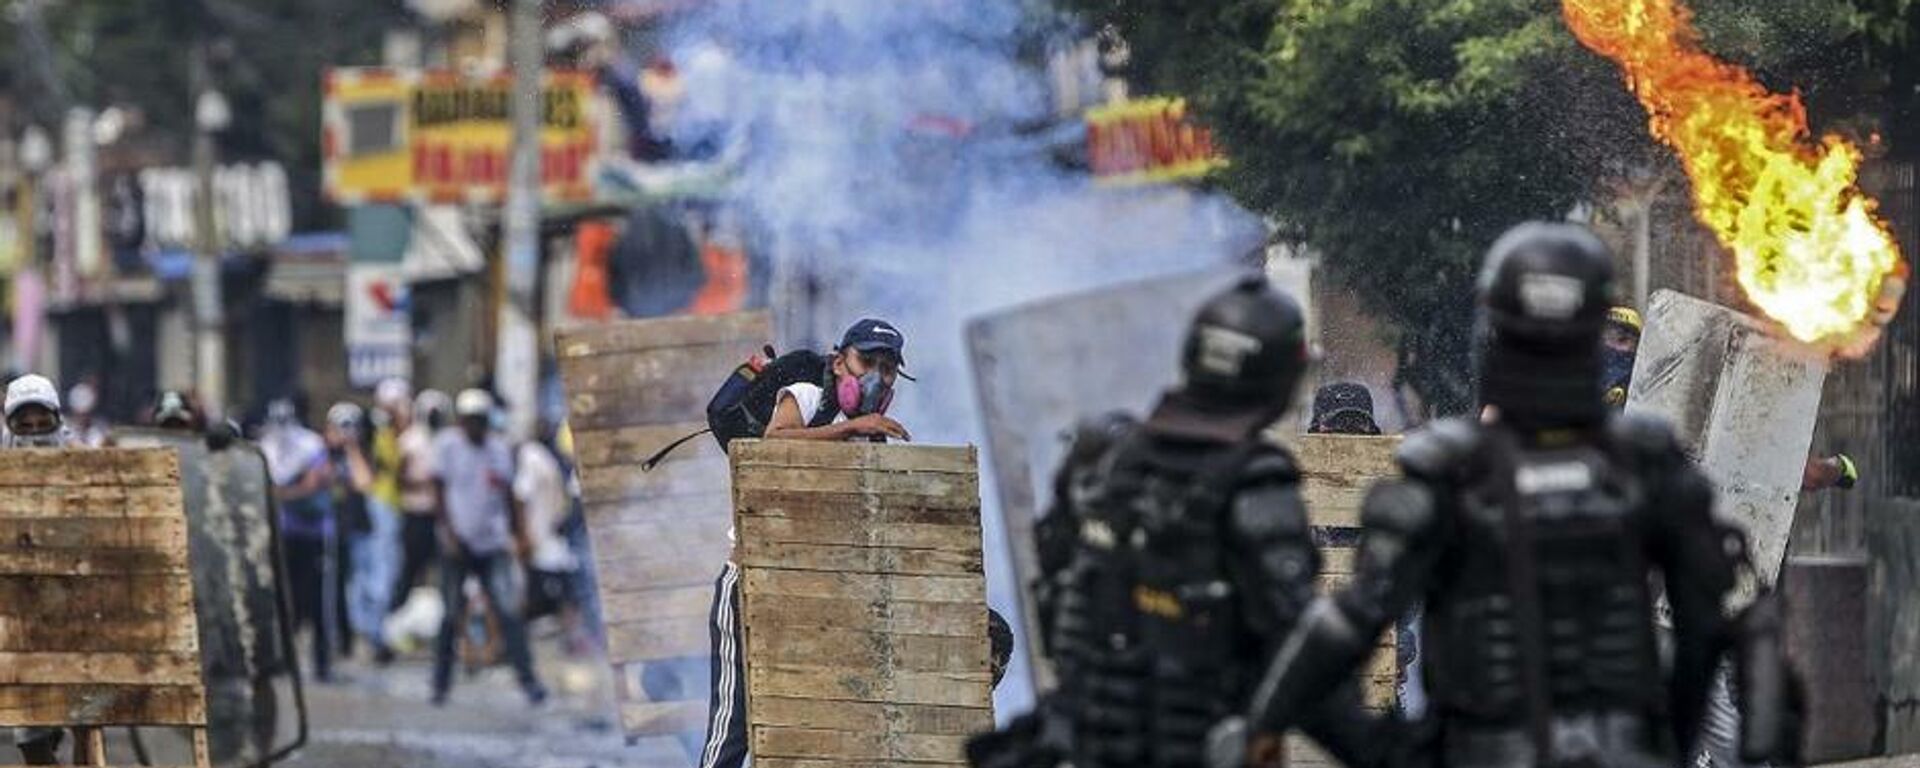 Disturbios contra la reforma tributaria en Cali (Colombia), el 29 de abril del 2021 - Sputnik Mundo, 1920, 30.05.2021